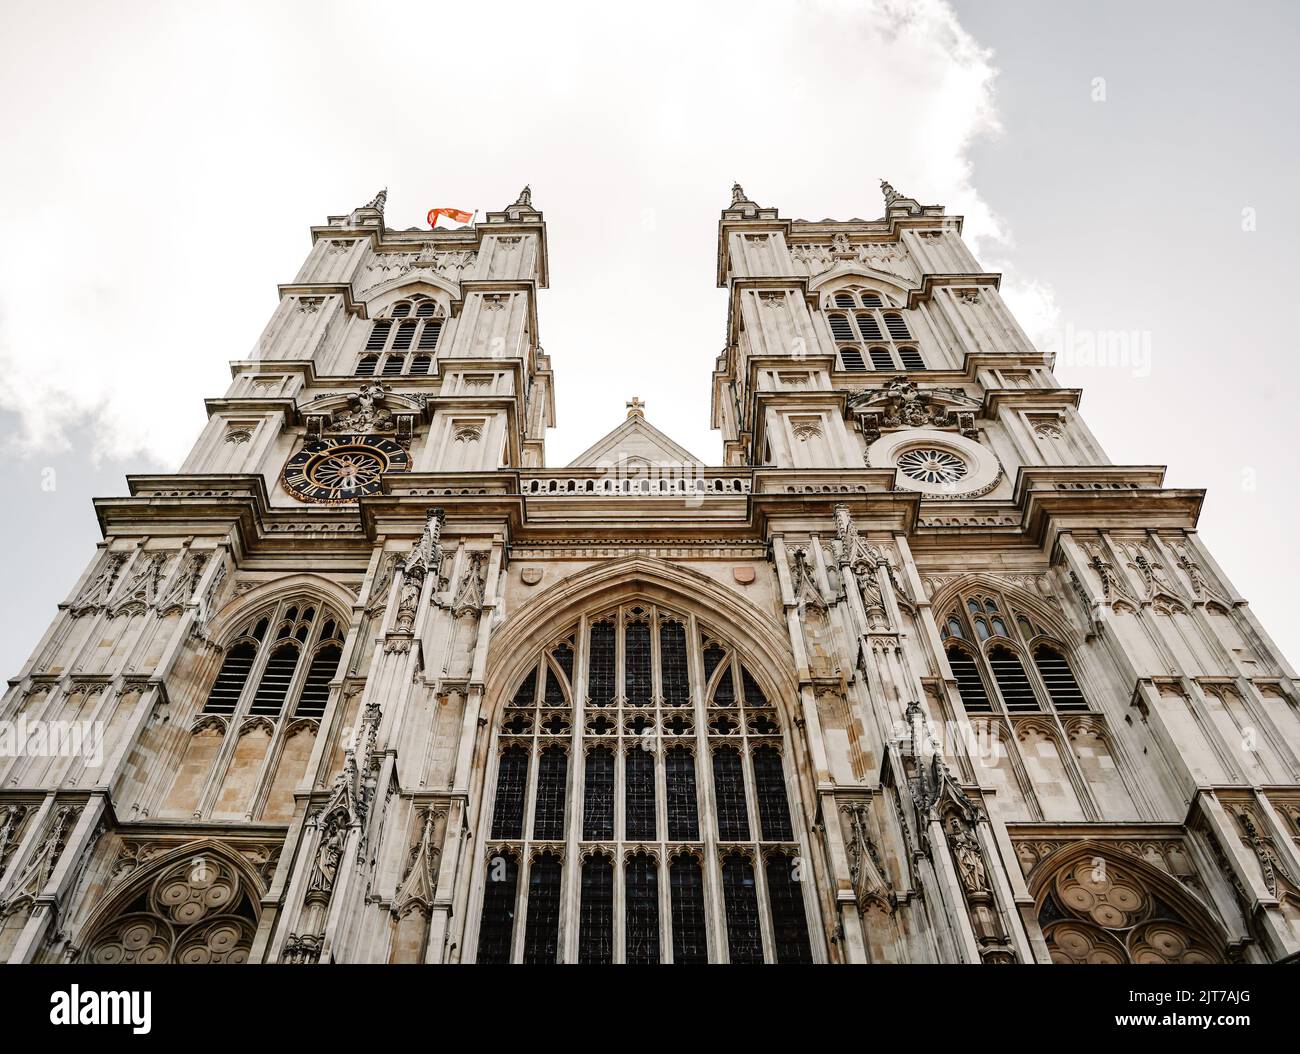 Eine Aufnahme der weltberühmten Westminster Abbey in London, England, Großbritannien Stockfoto